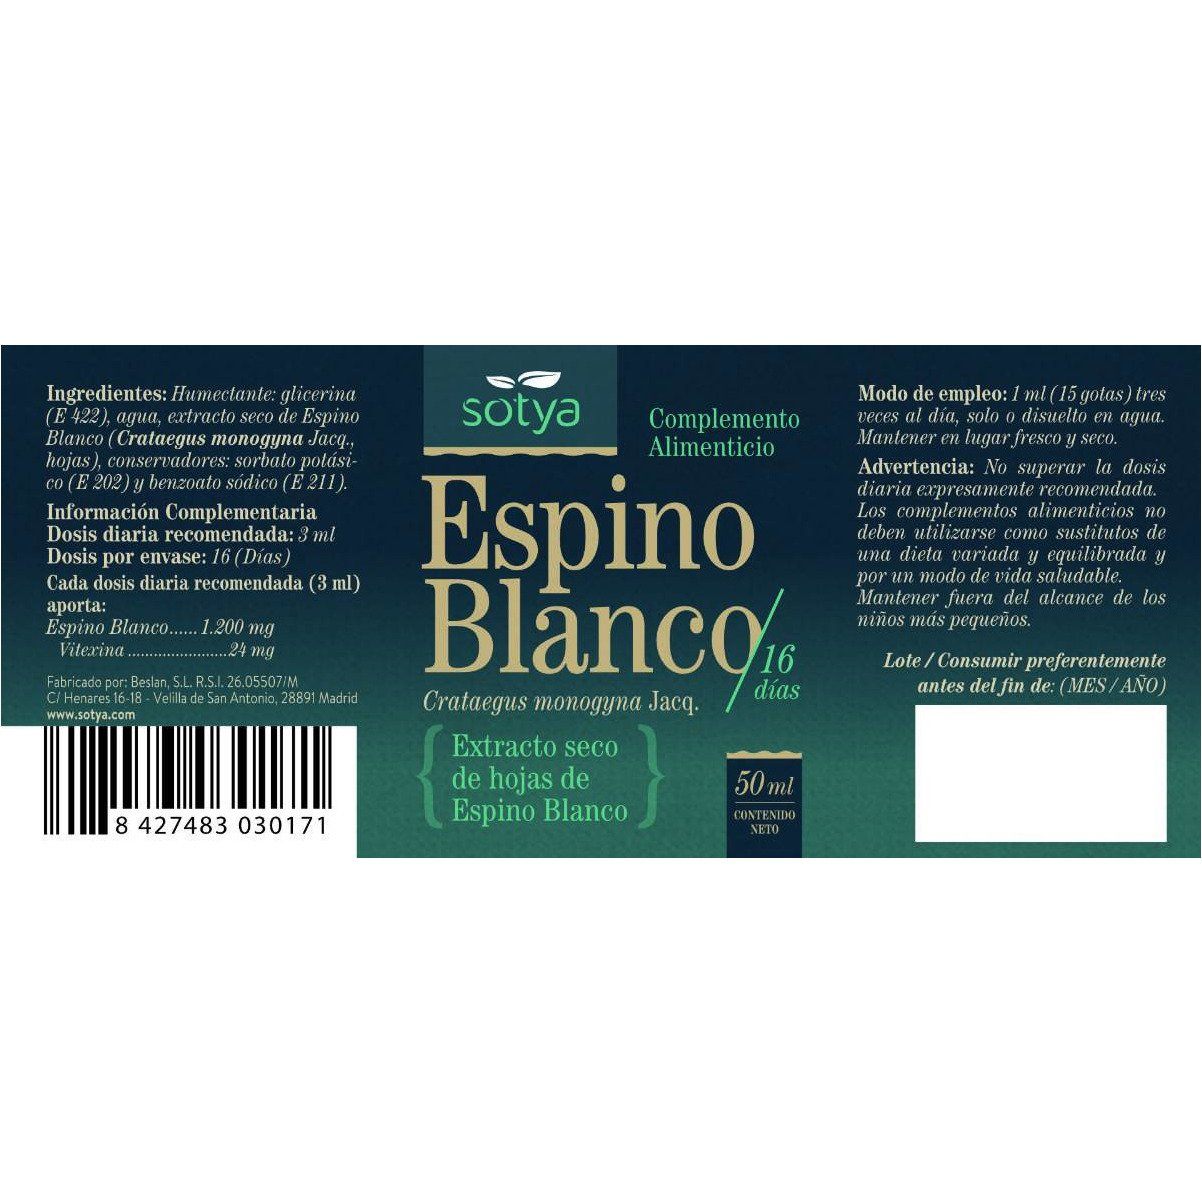 Extracto de Espino Blanco 50 ml | Sotya - Dietetica Ferrer